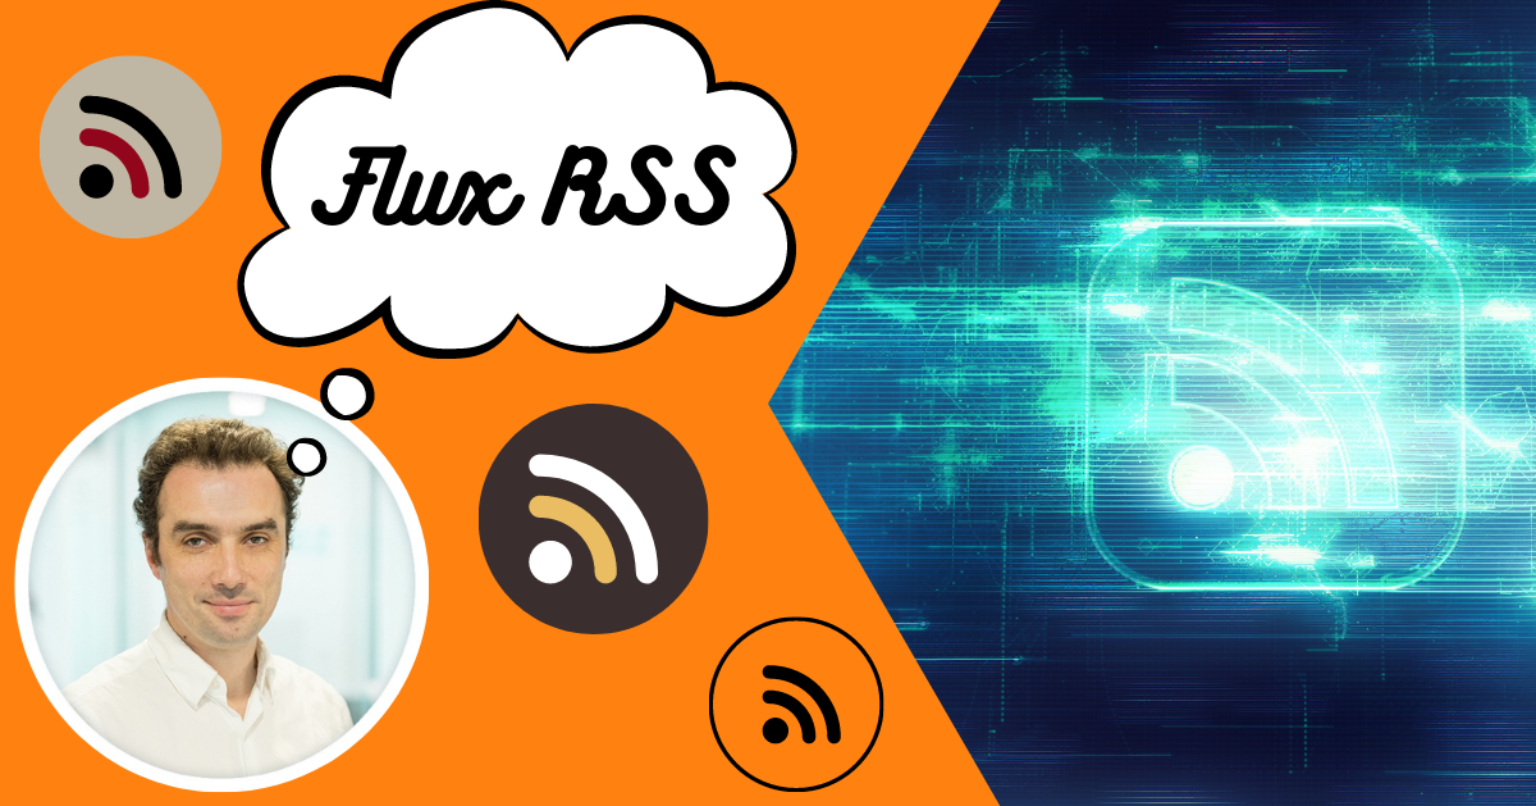 Flux RSS Front